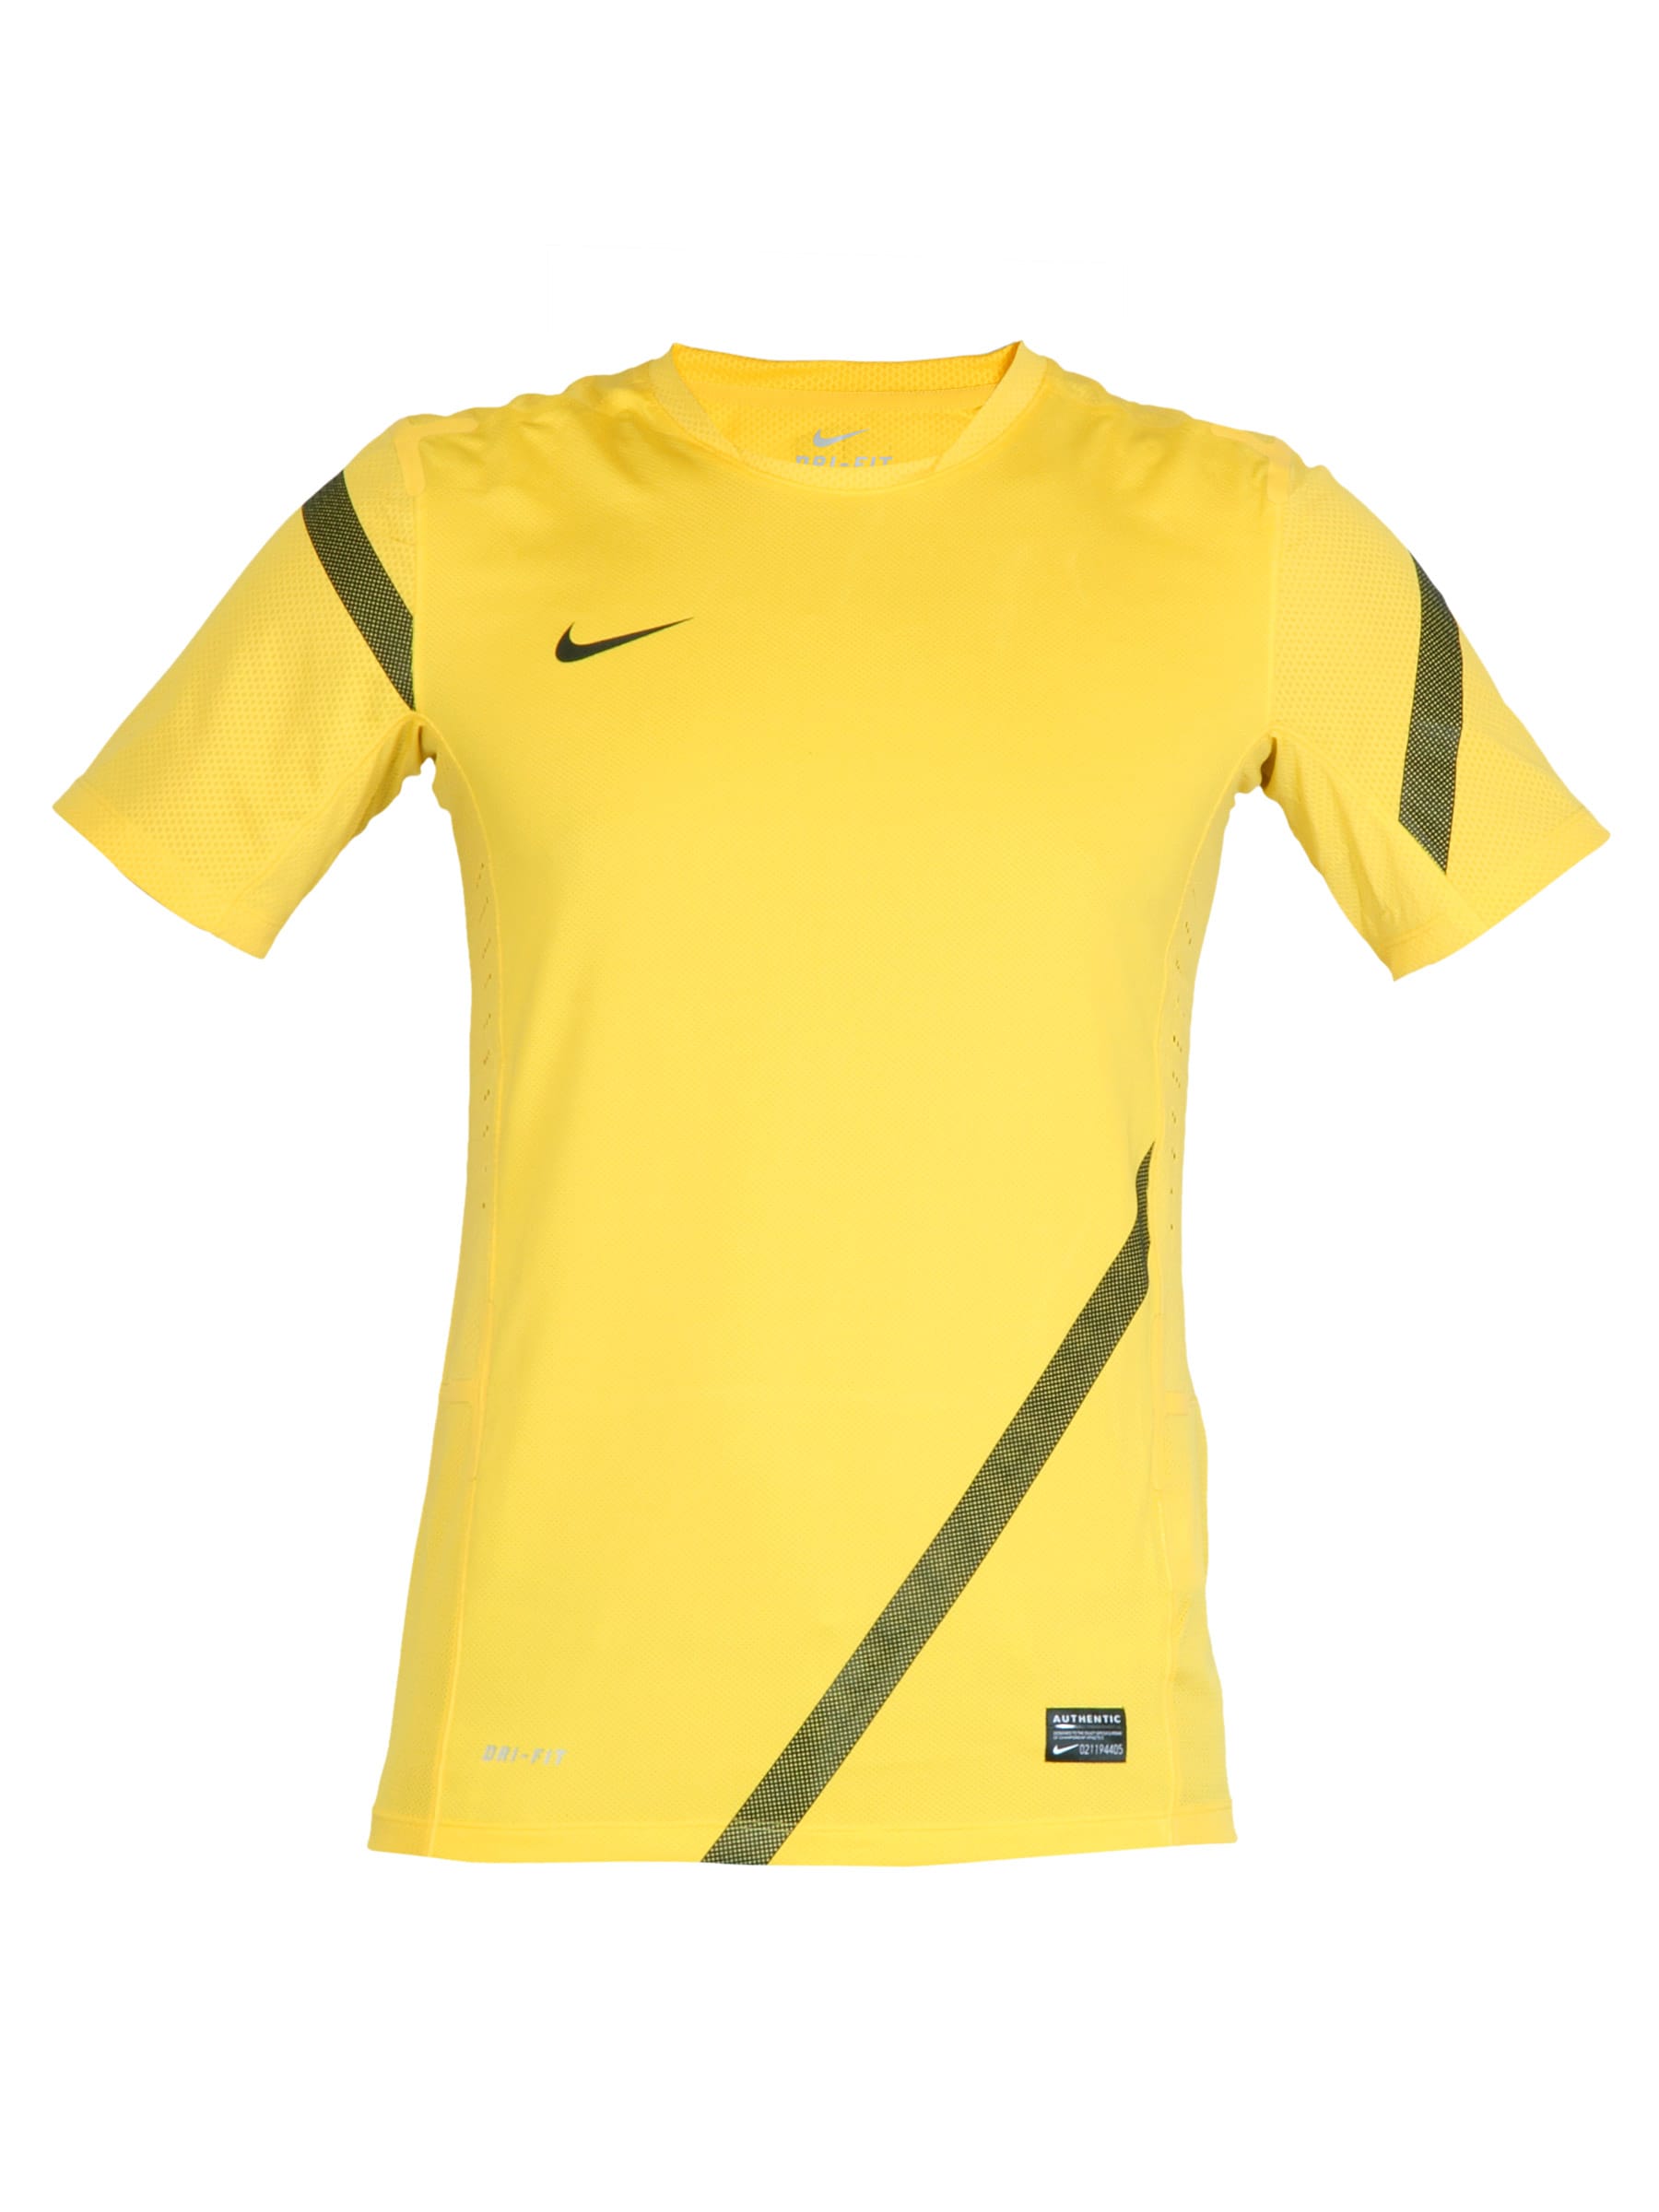 Nike Men Yellow Jersey